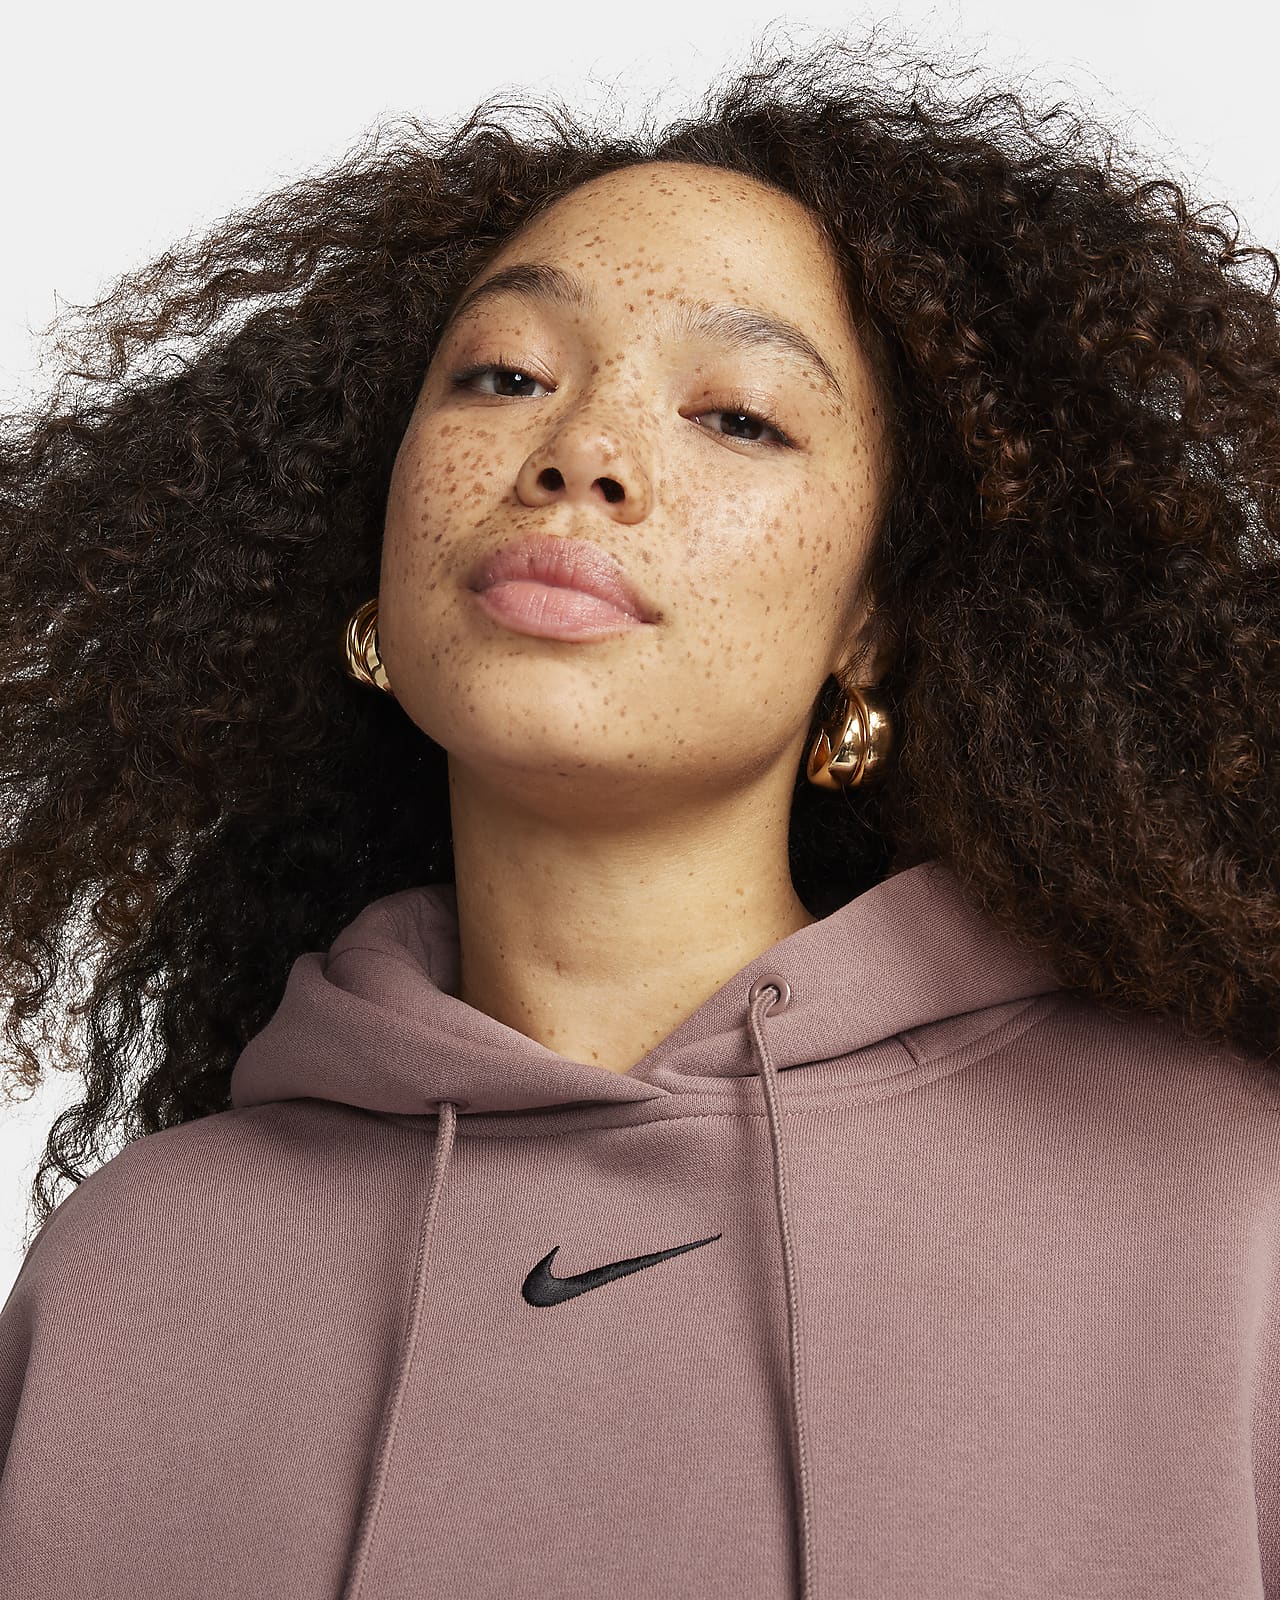 Nike Sportswear Plush Women's Oversized Pullover Hoodie